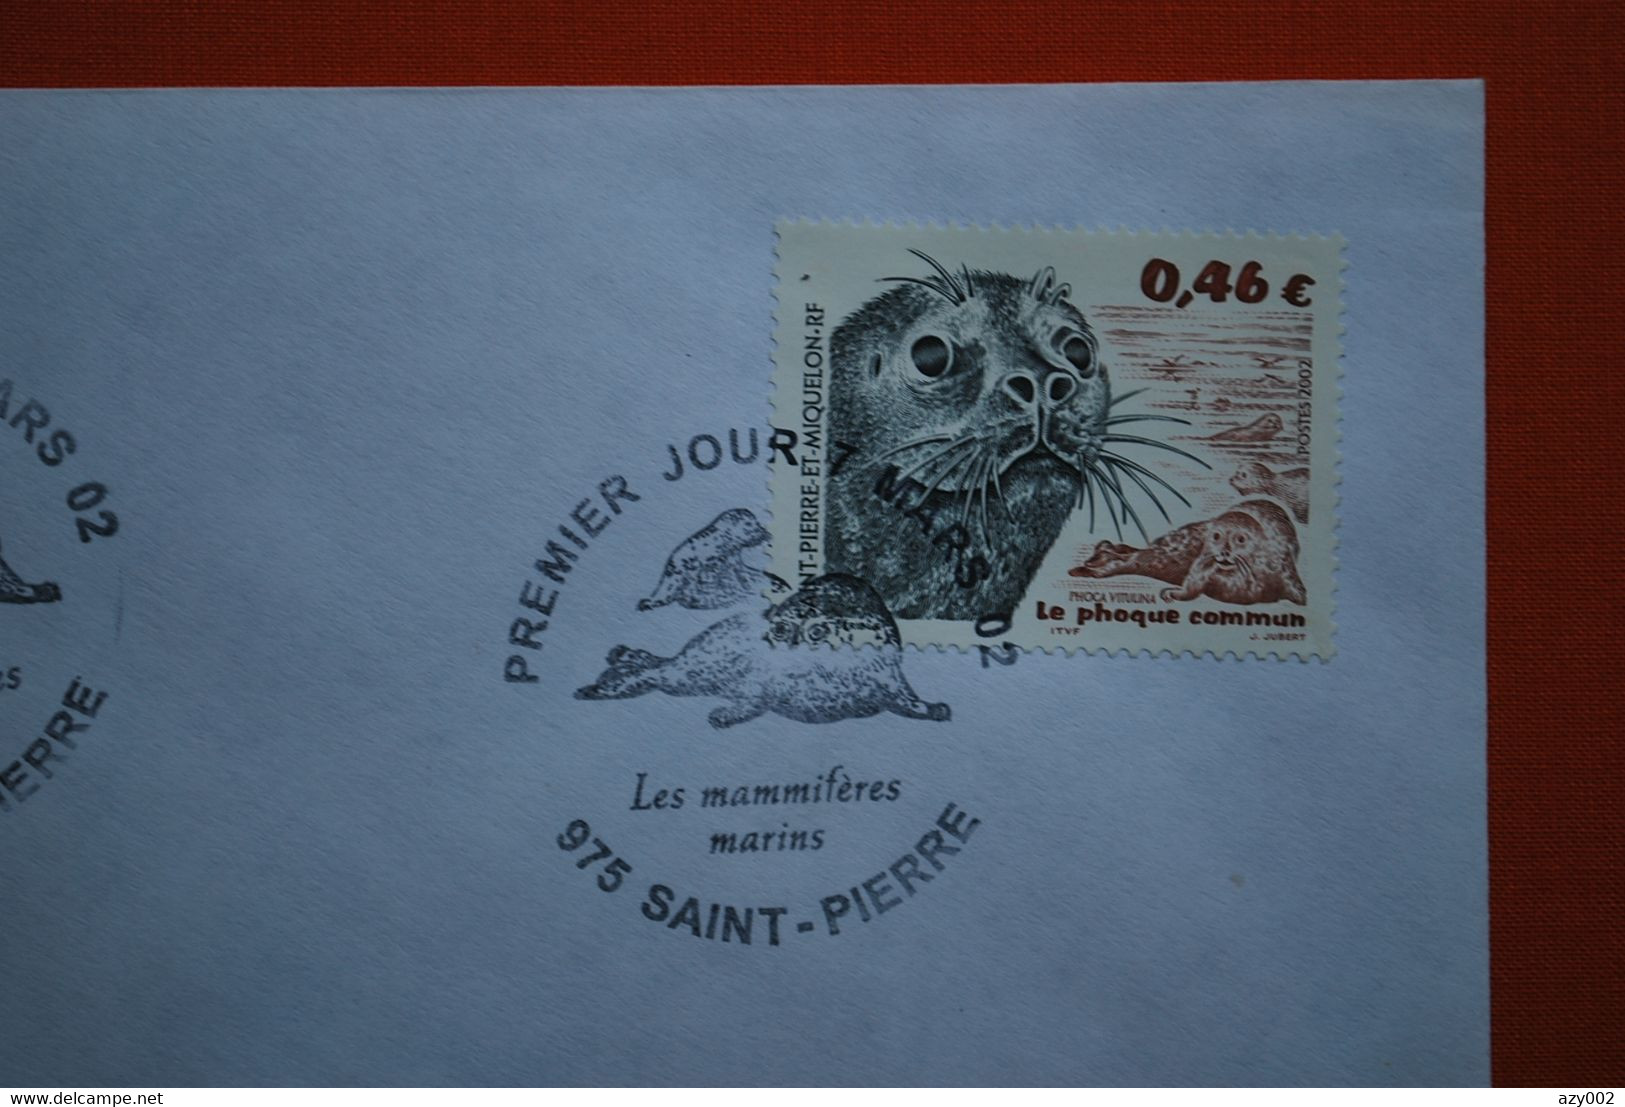 St Pierre & Miquelon Timbre N° 774 -"Le Phoque Commun" Sur Lettre - Oblitération 1er Jour Du 07 Mars 2002 - Lettres & Documents